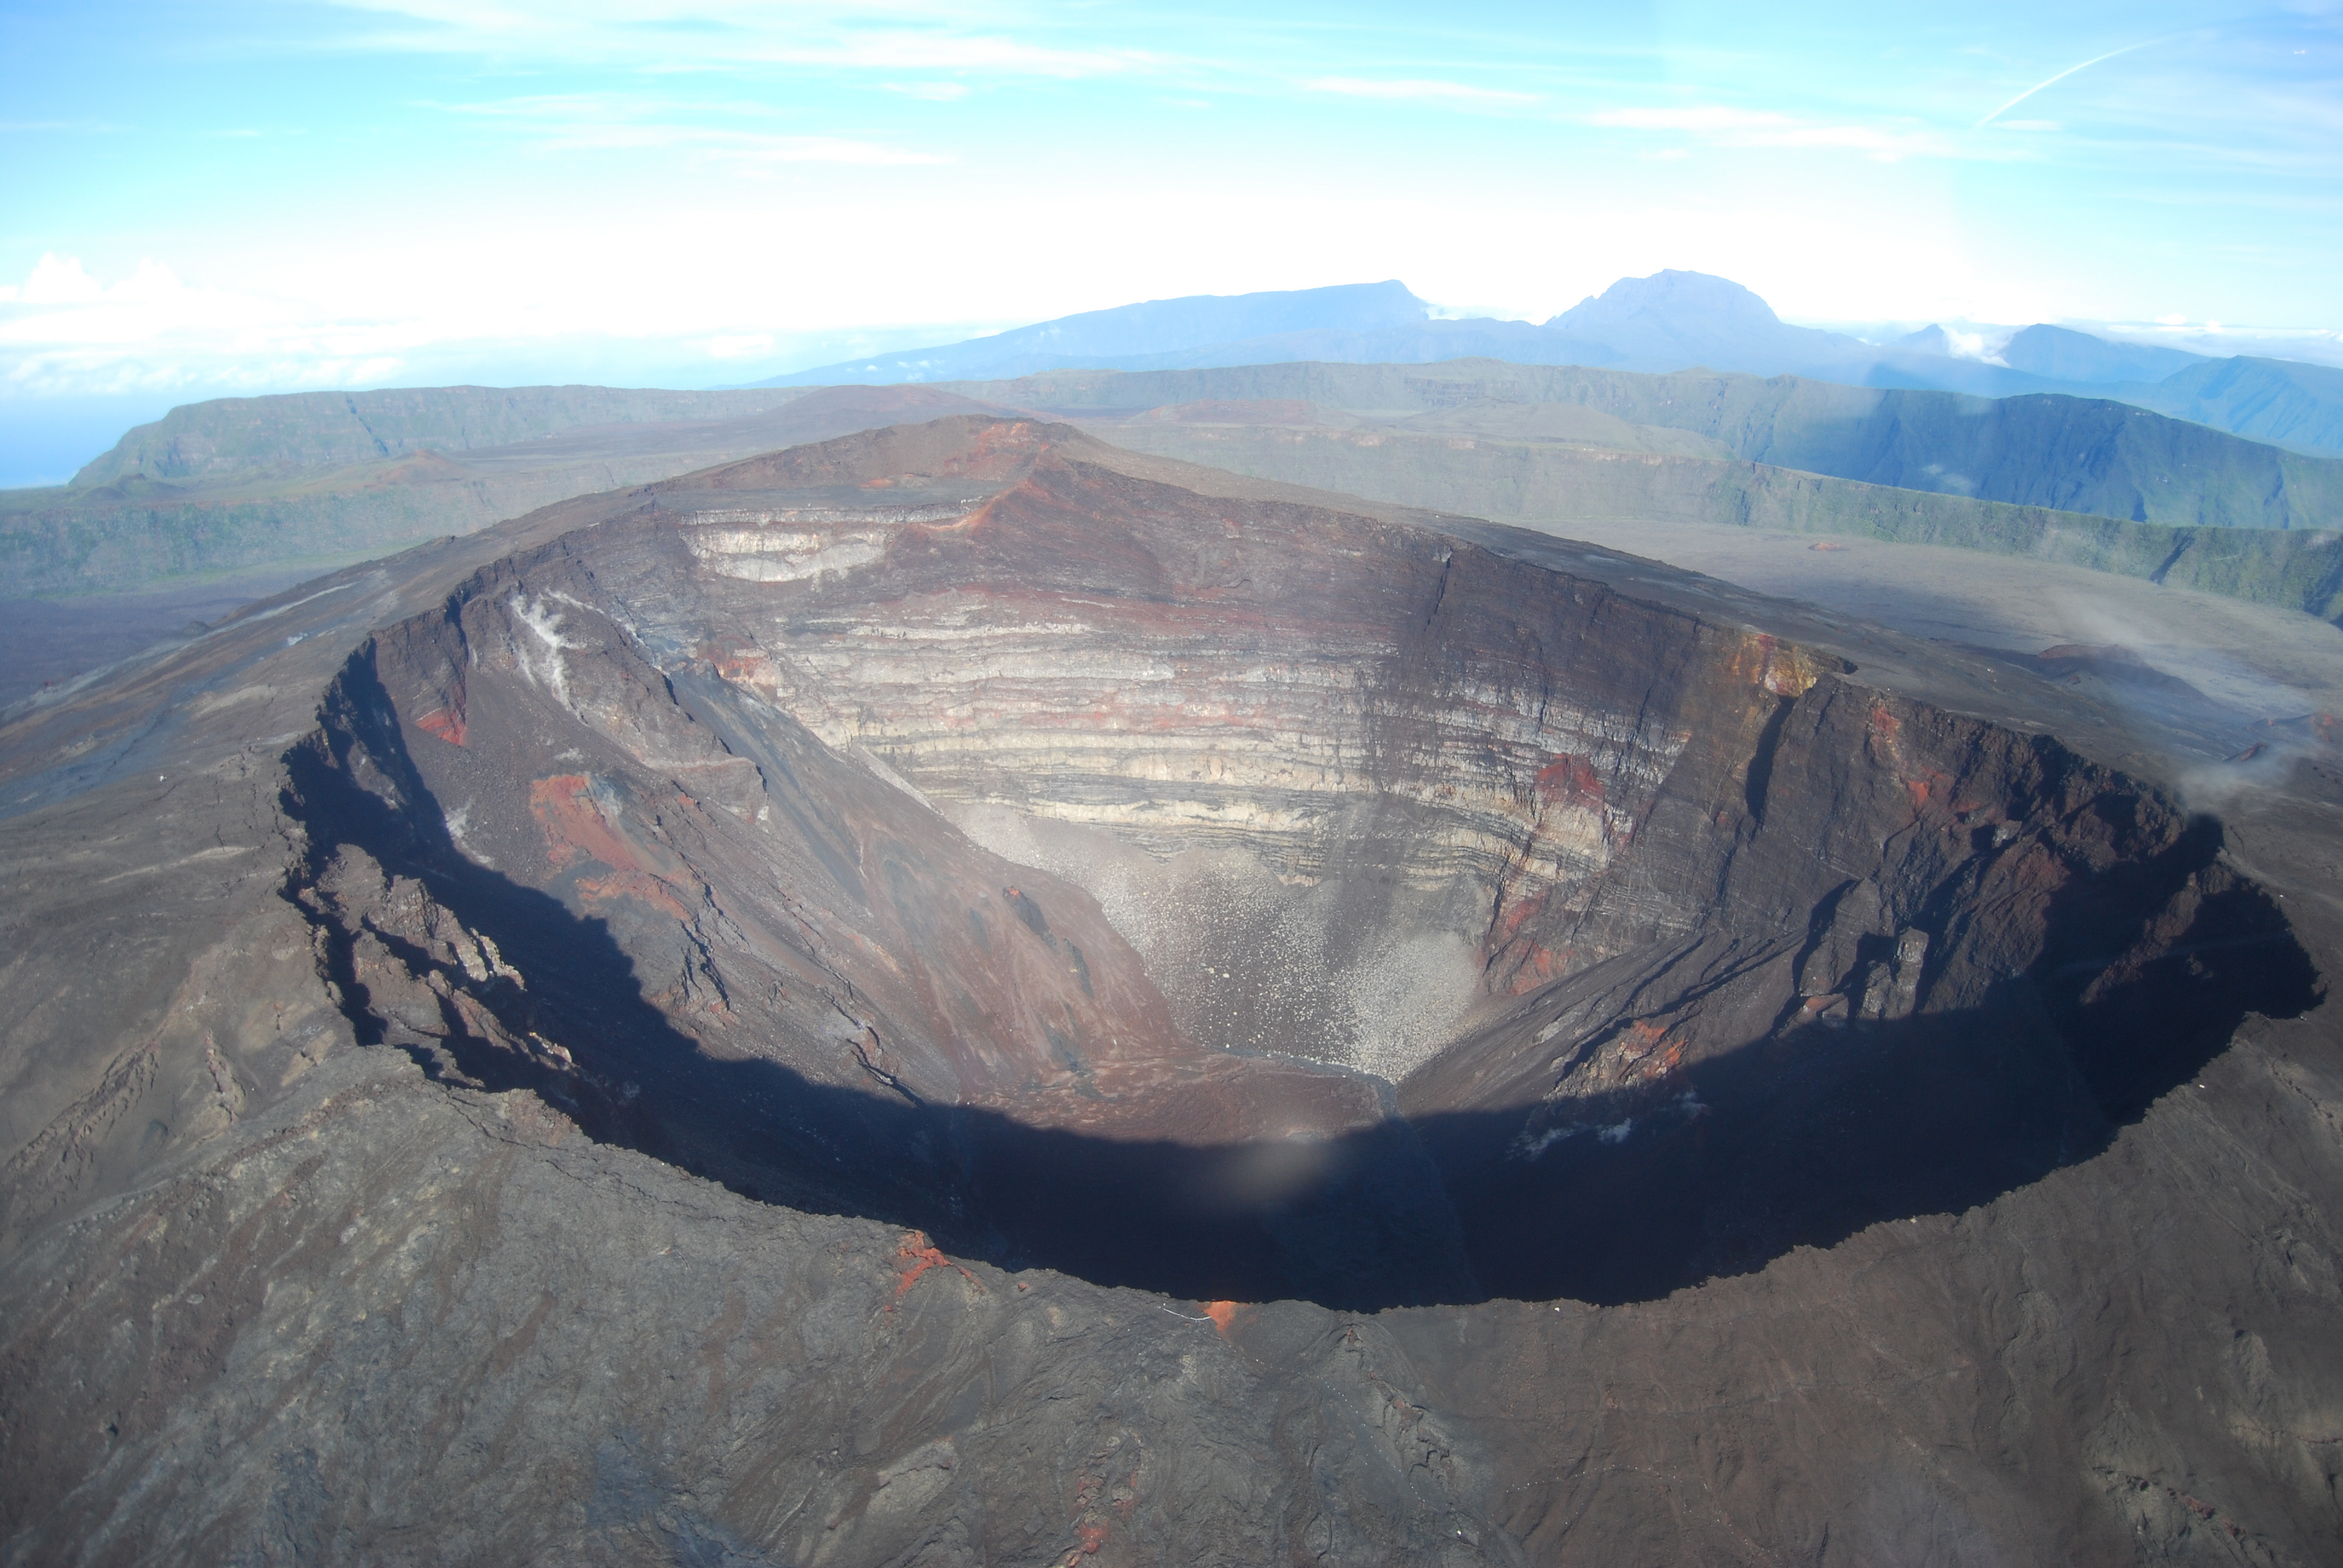 La Réunion: le Piton de la fournaise en éruption